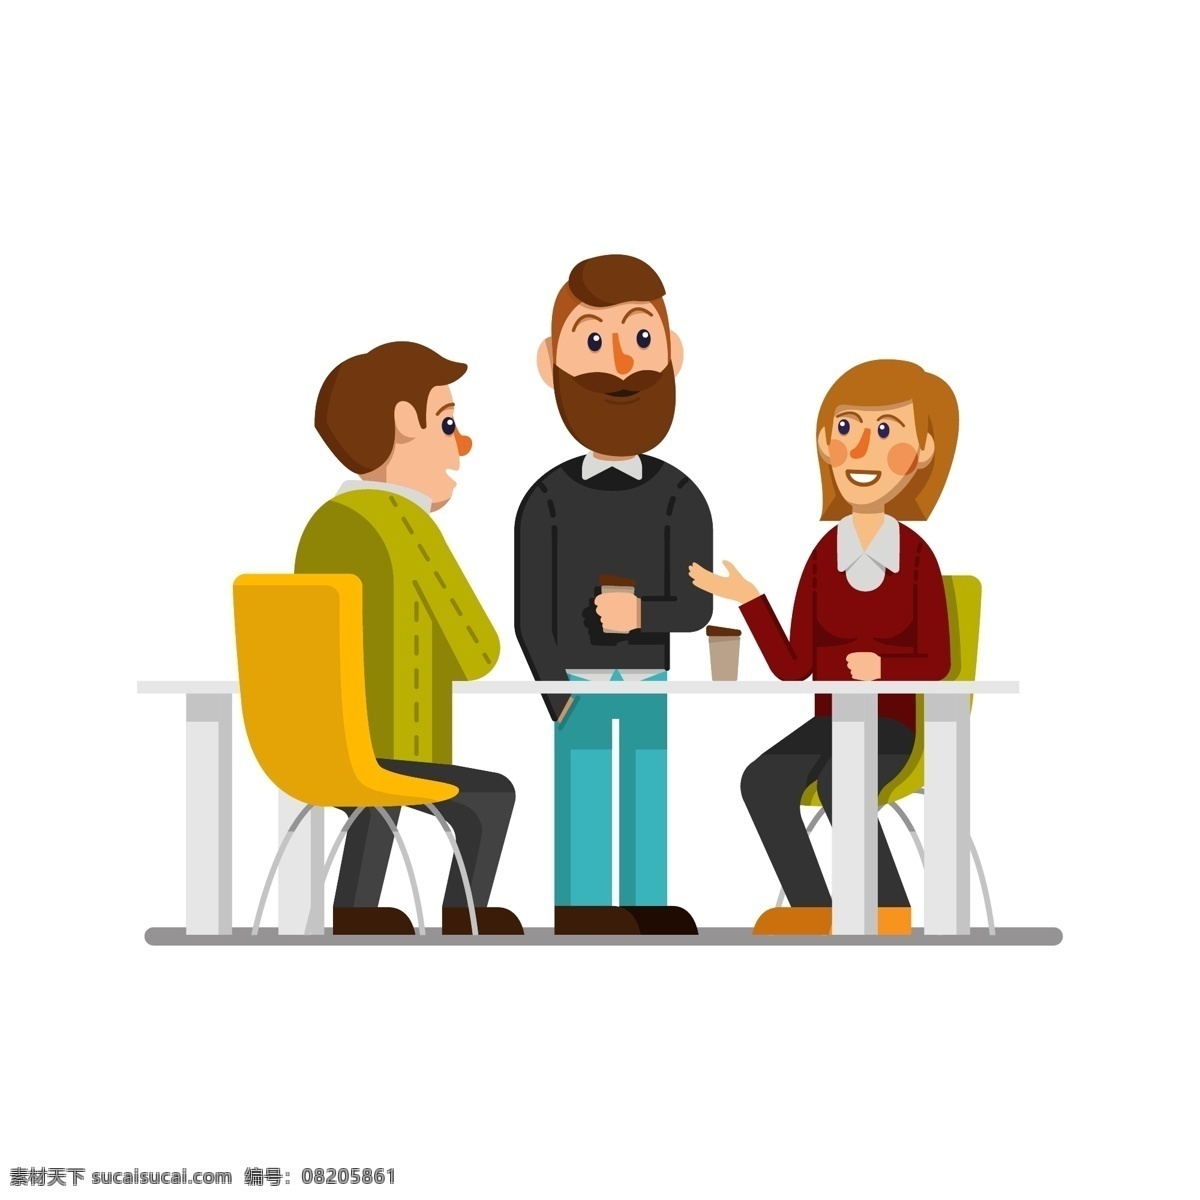 创意 谈话 商务 人物 矢量图 办公桌 椅子 男子 女子 咖啡 动漫动画 动漫人物